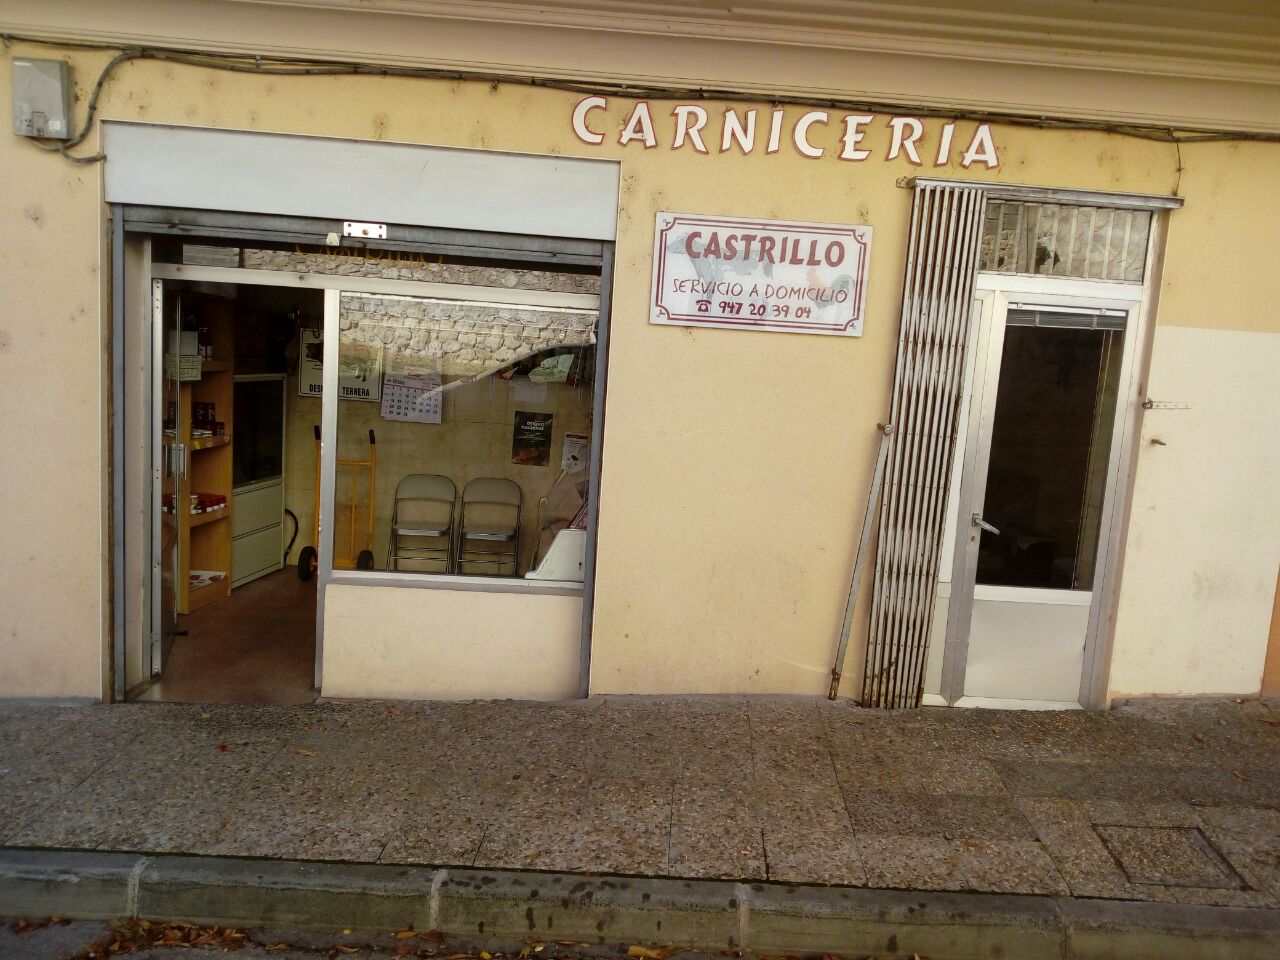 Carniceria Castrillo